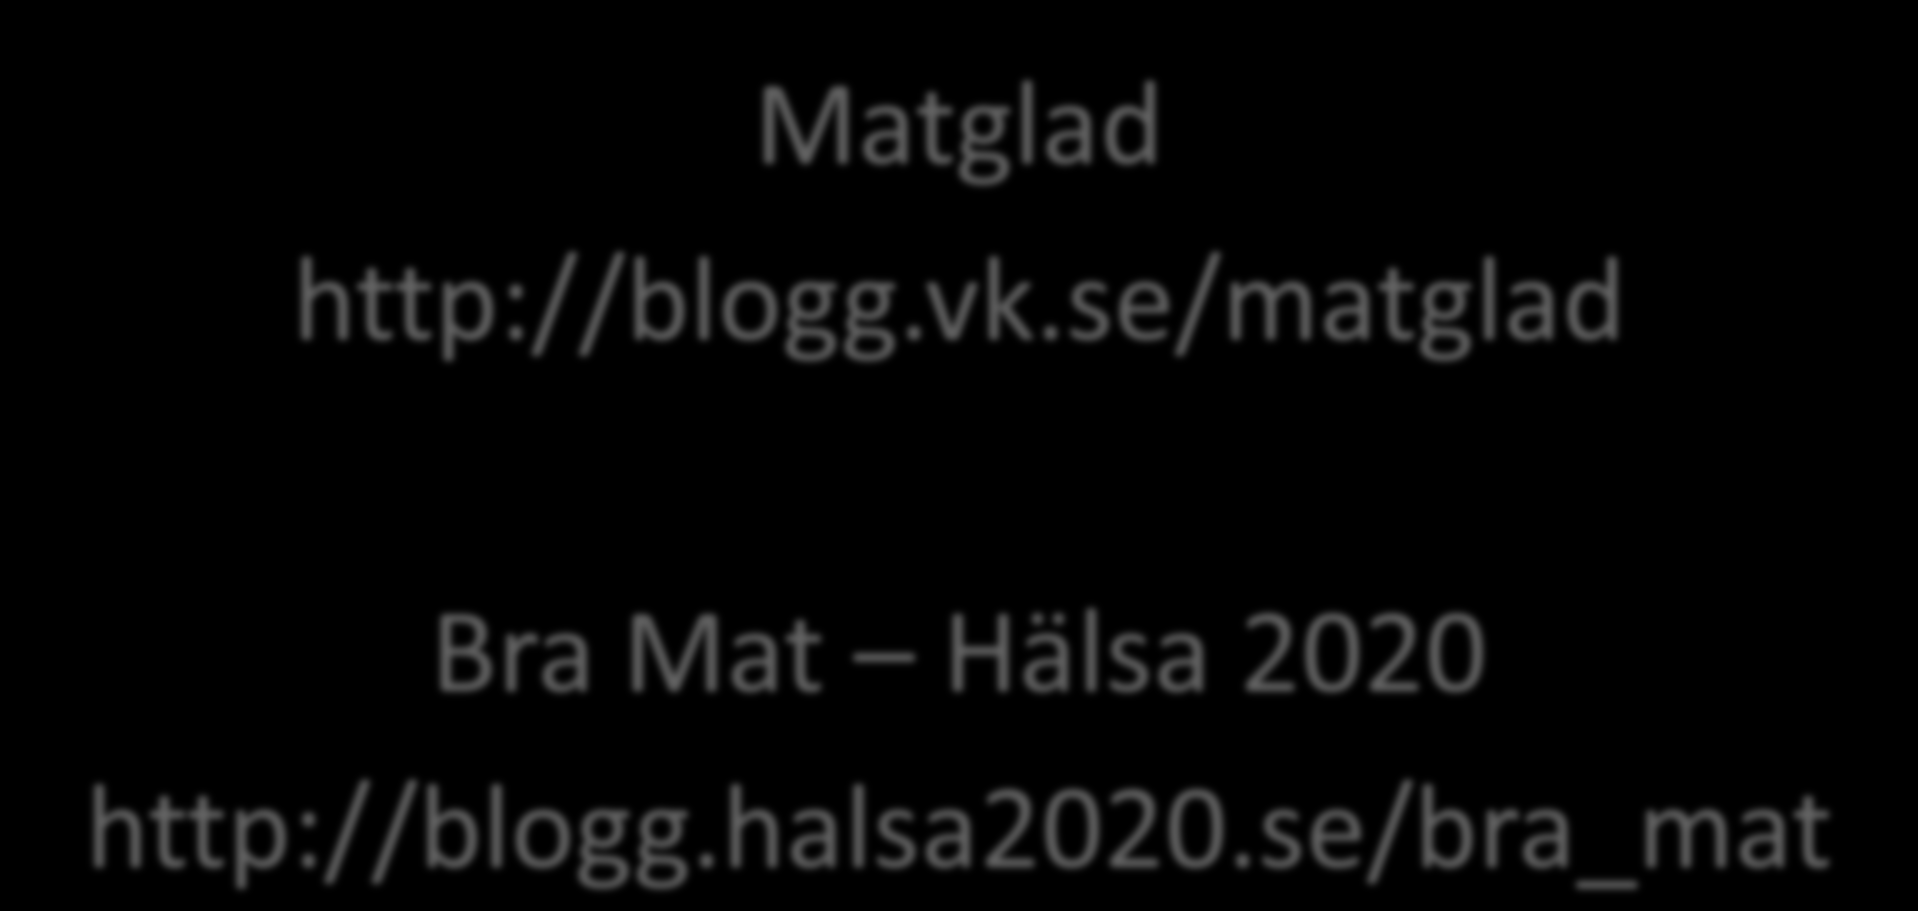 Matglad http://blogg.vk.